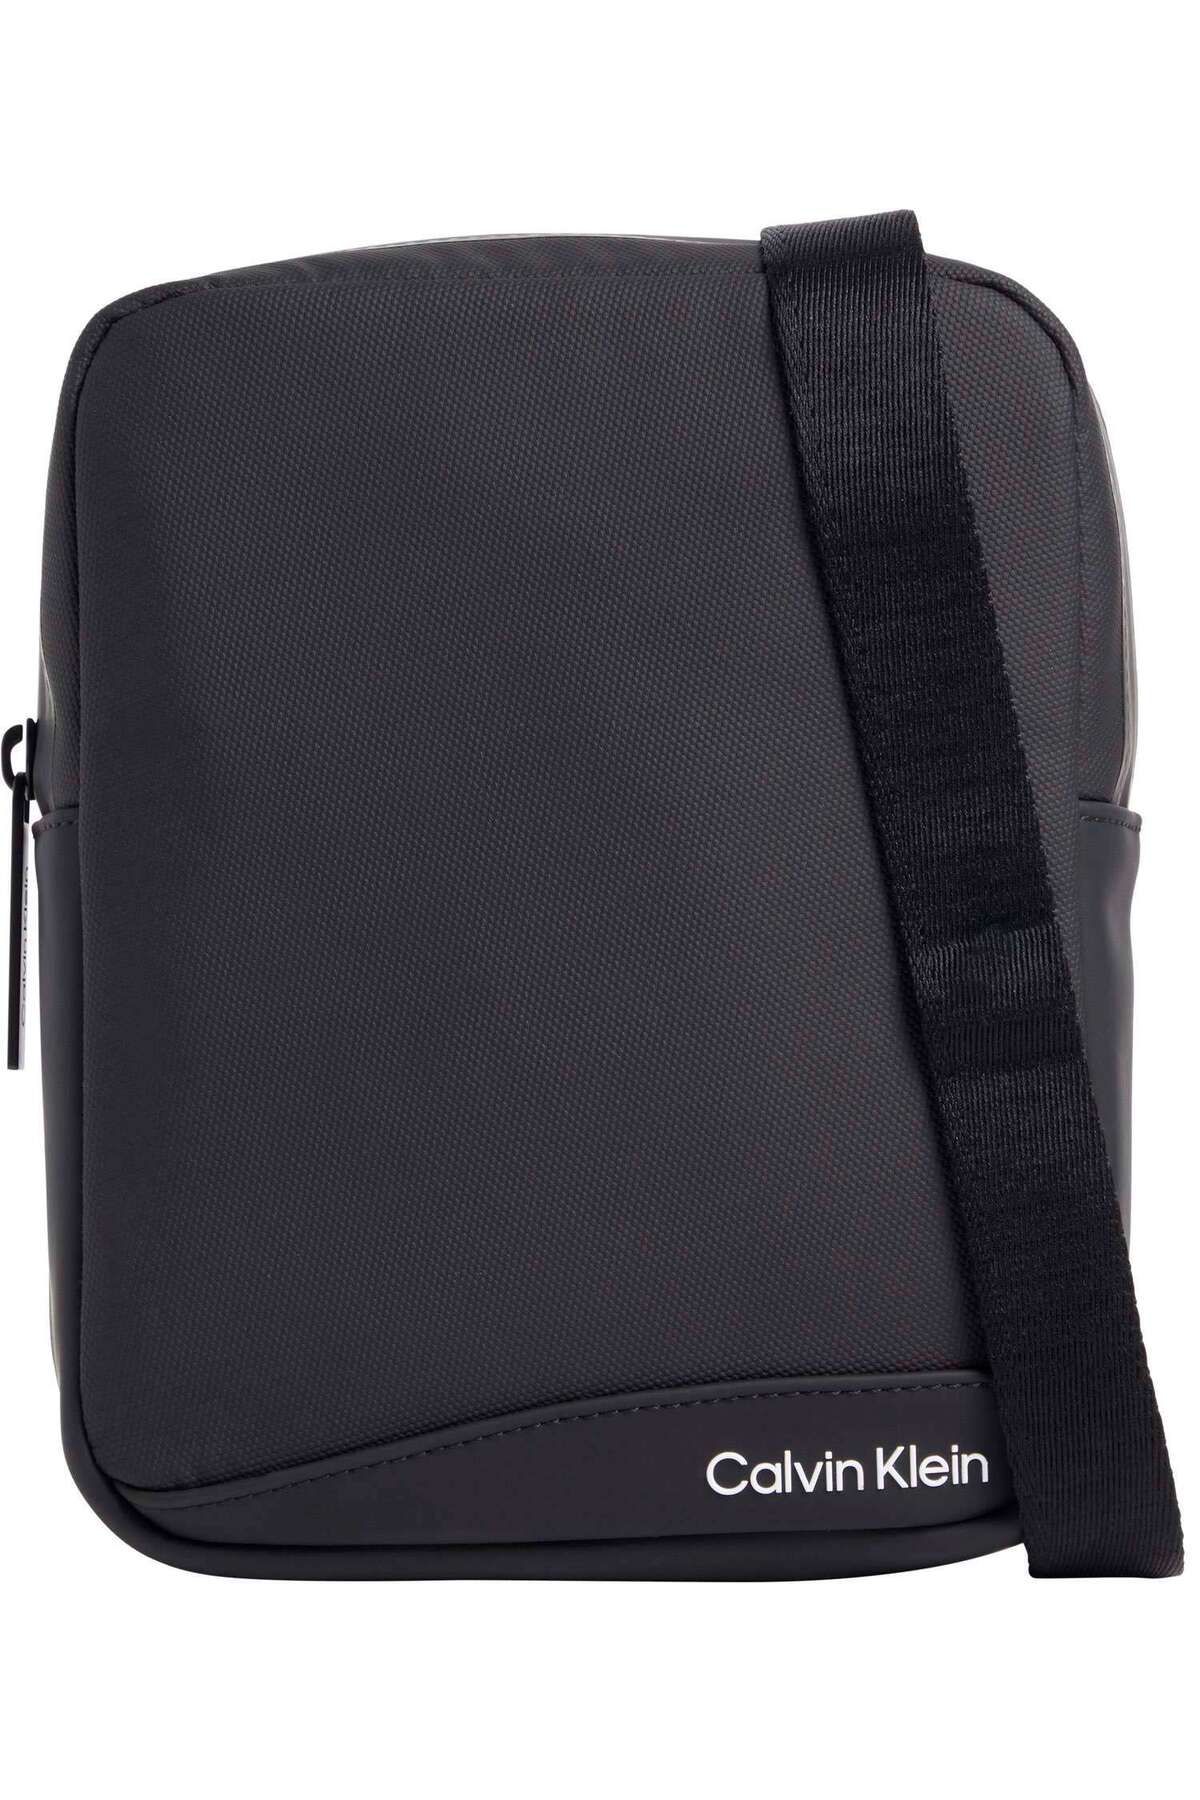 Calvin Klein RUBBERIZED CONV REPORTER S